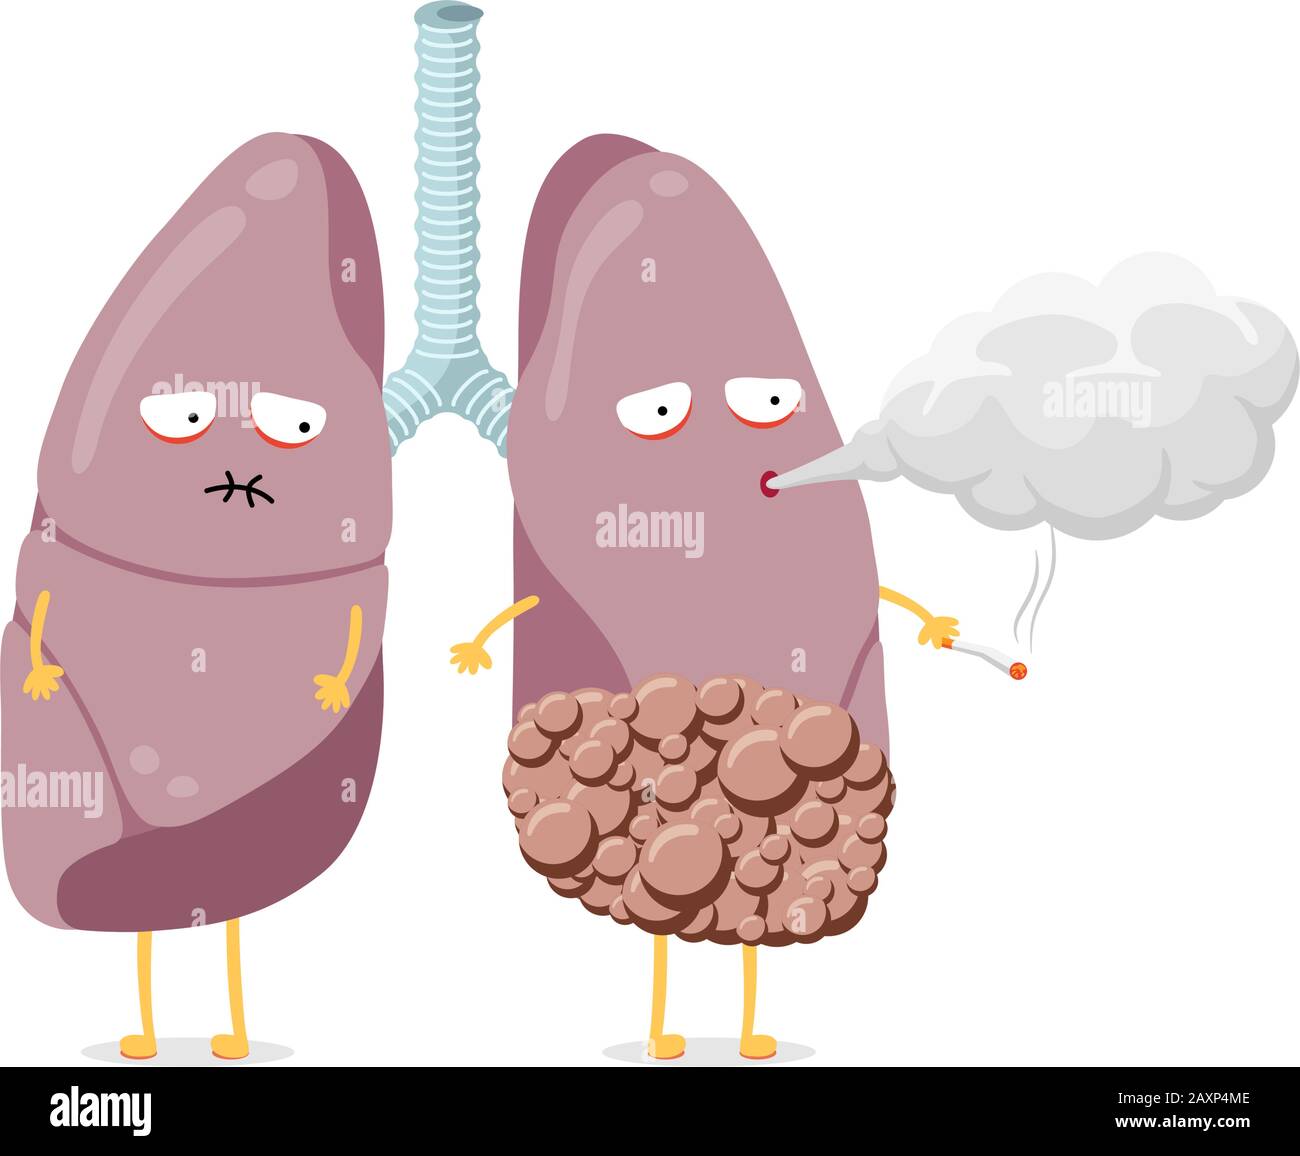 Mauvaise santé poumons caricature personnage fumer cigarette. L'organe interne du système respiratoire humain atteint d'un cancer souffle de la fumée et est en mauvaise santé. Mauvaise habitude dangereuse addiction vecteur eps illustration Illustration de Vecteur